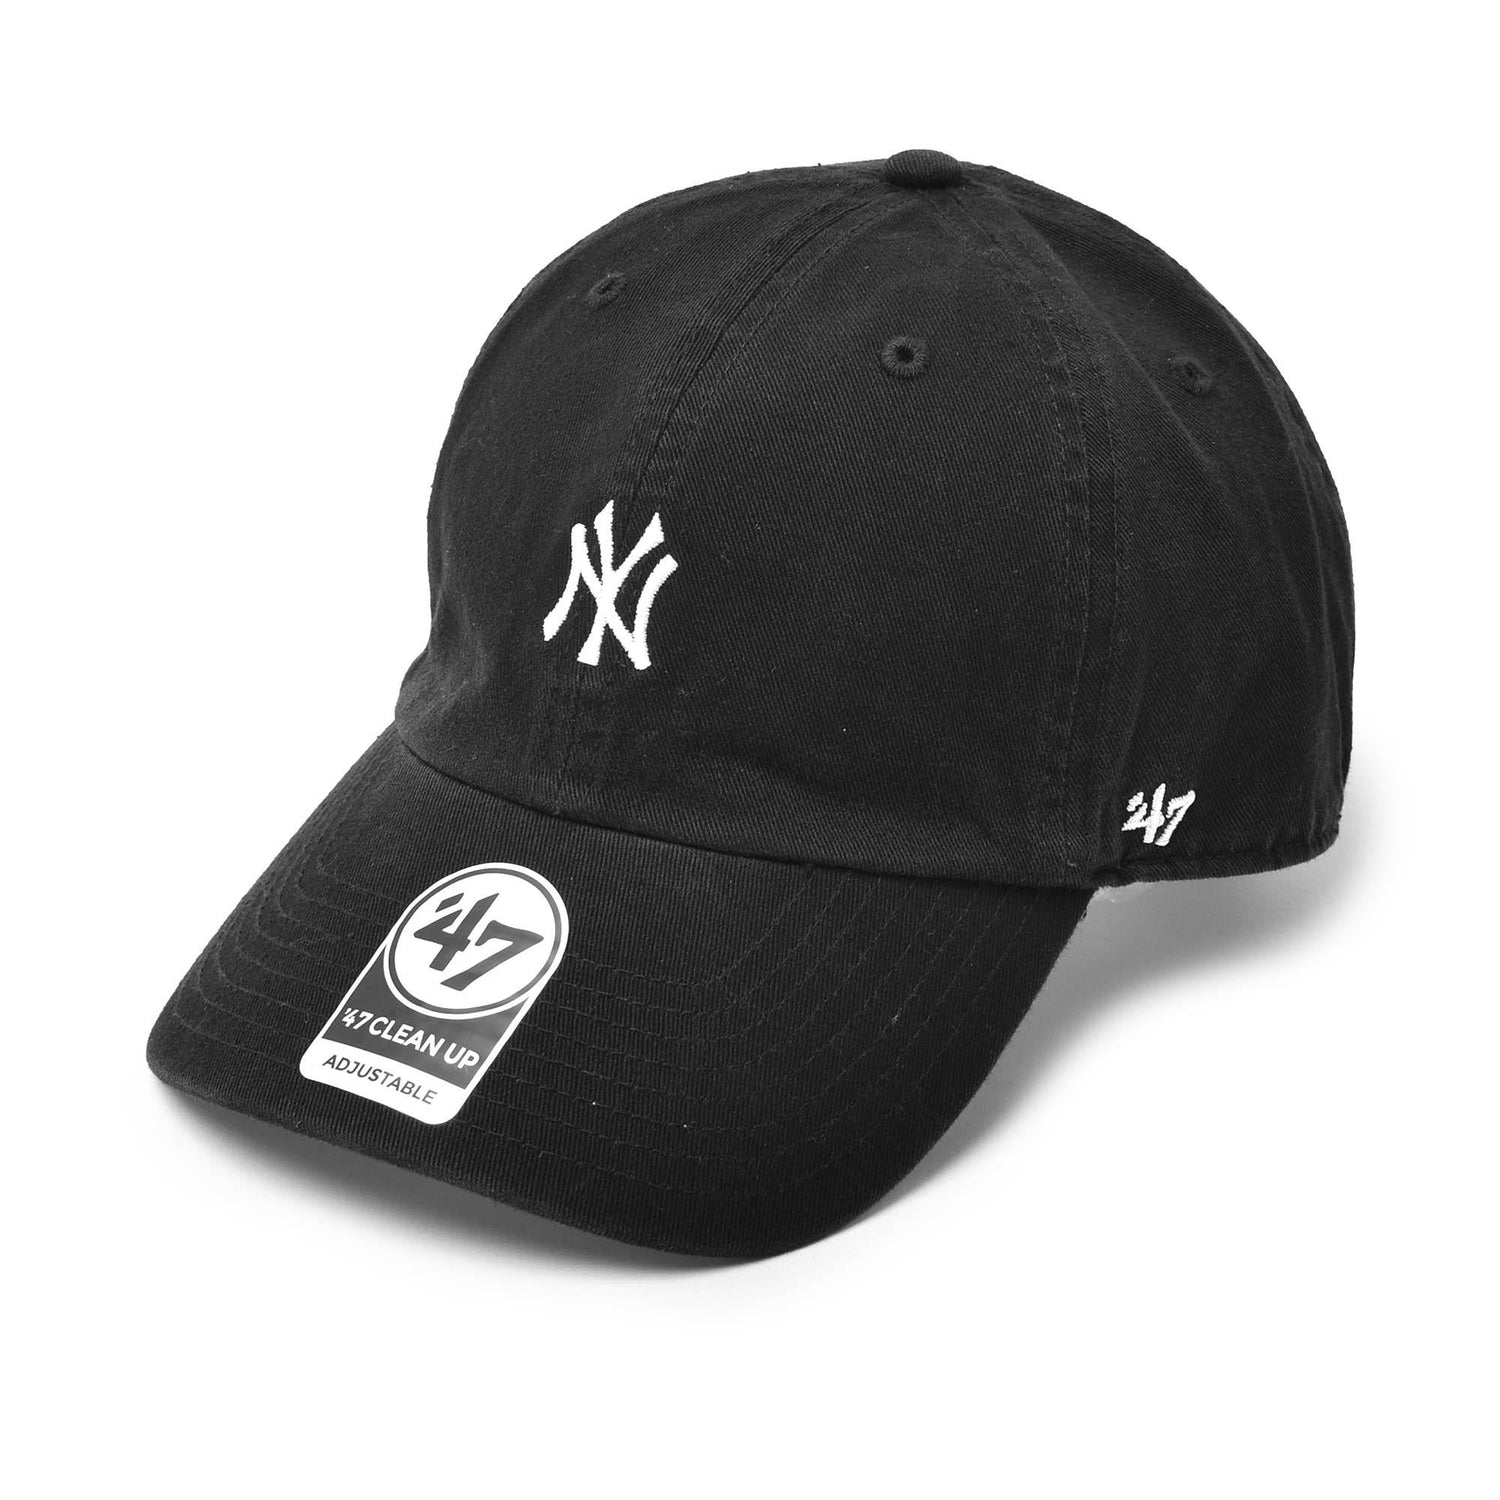 ヤンキース キャップ ベースランナー ’47 クリーンナップ B-BSRNR17GWS 帽子 11カラー 返品無料